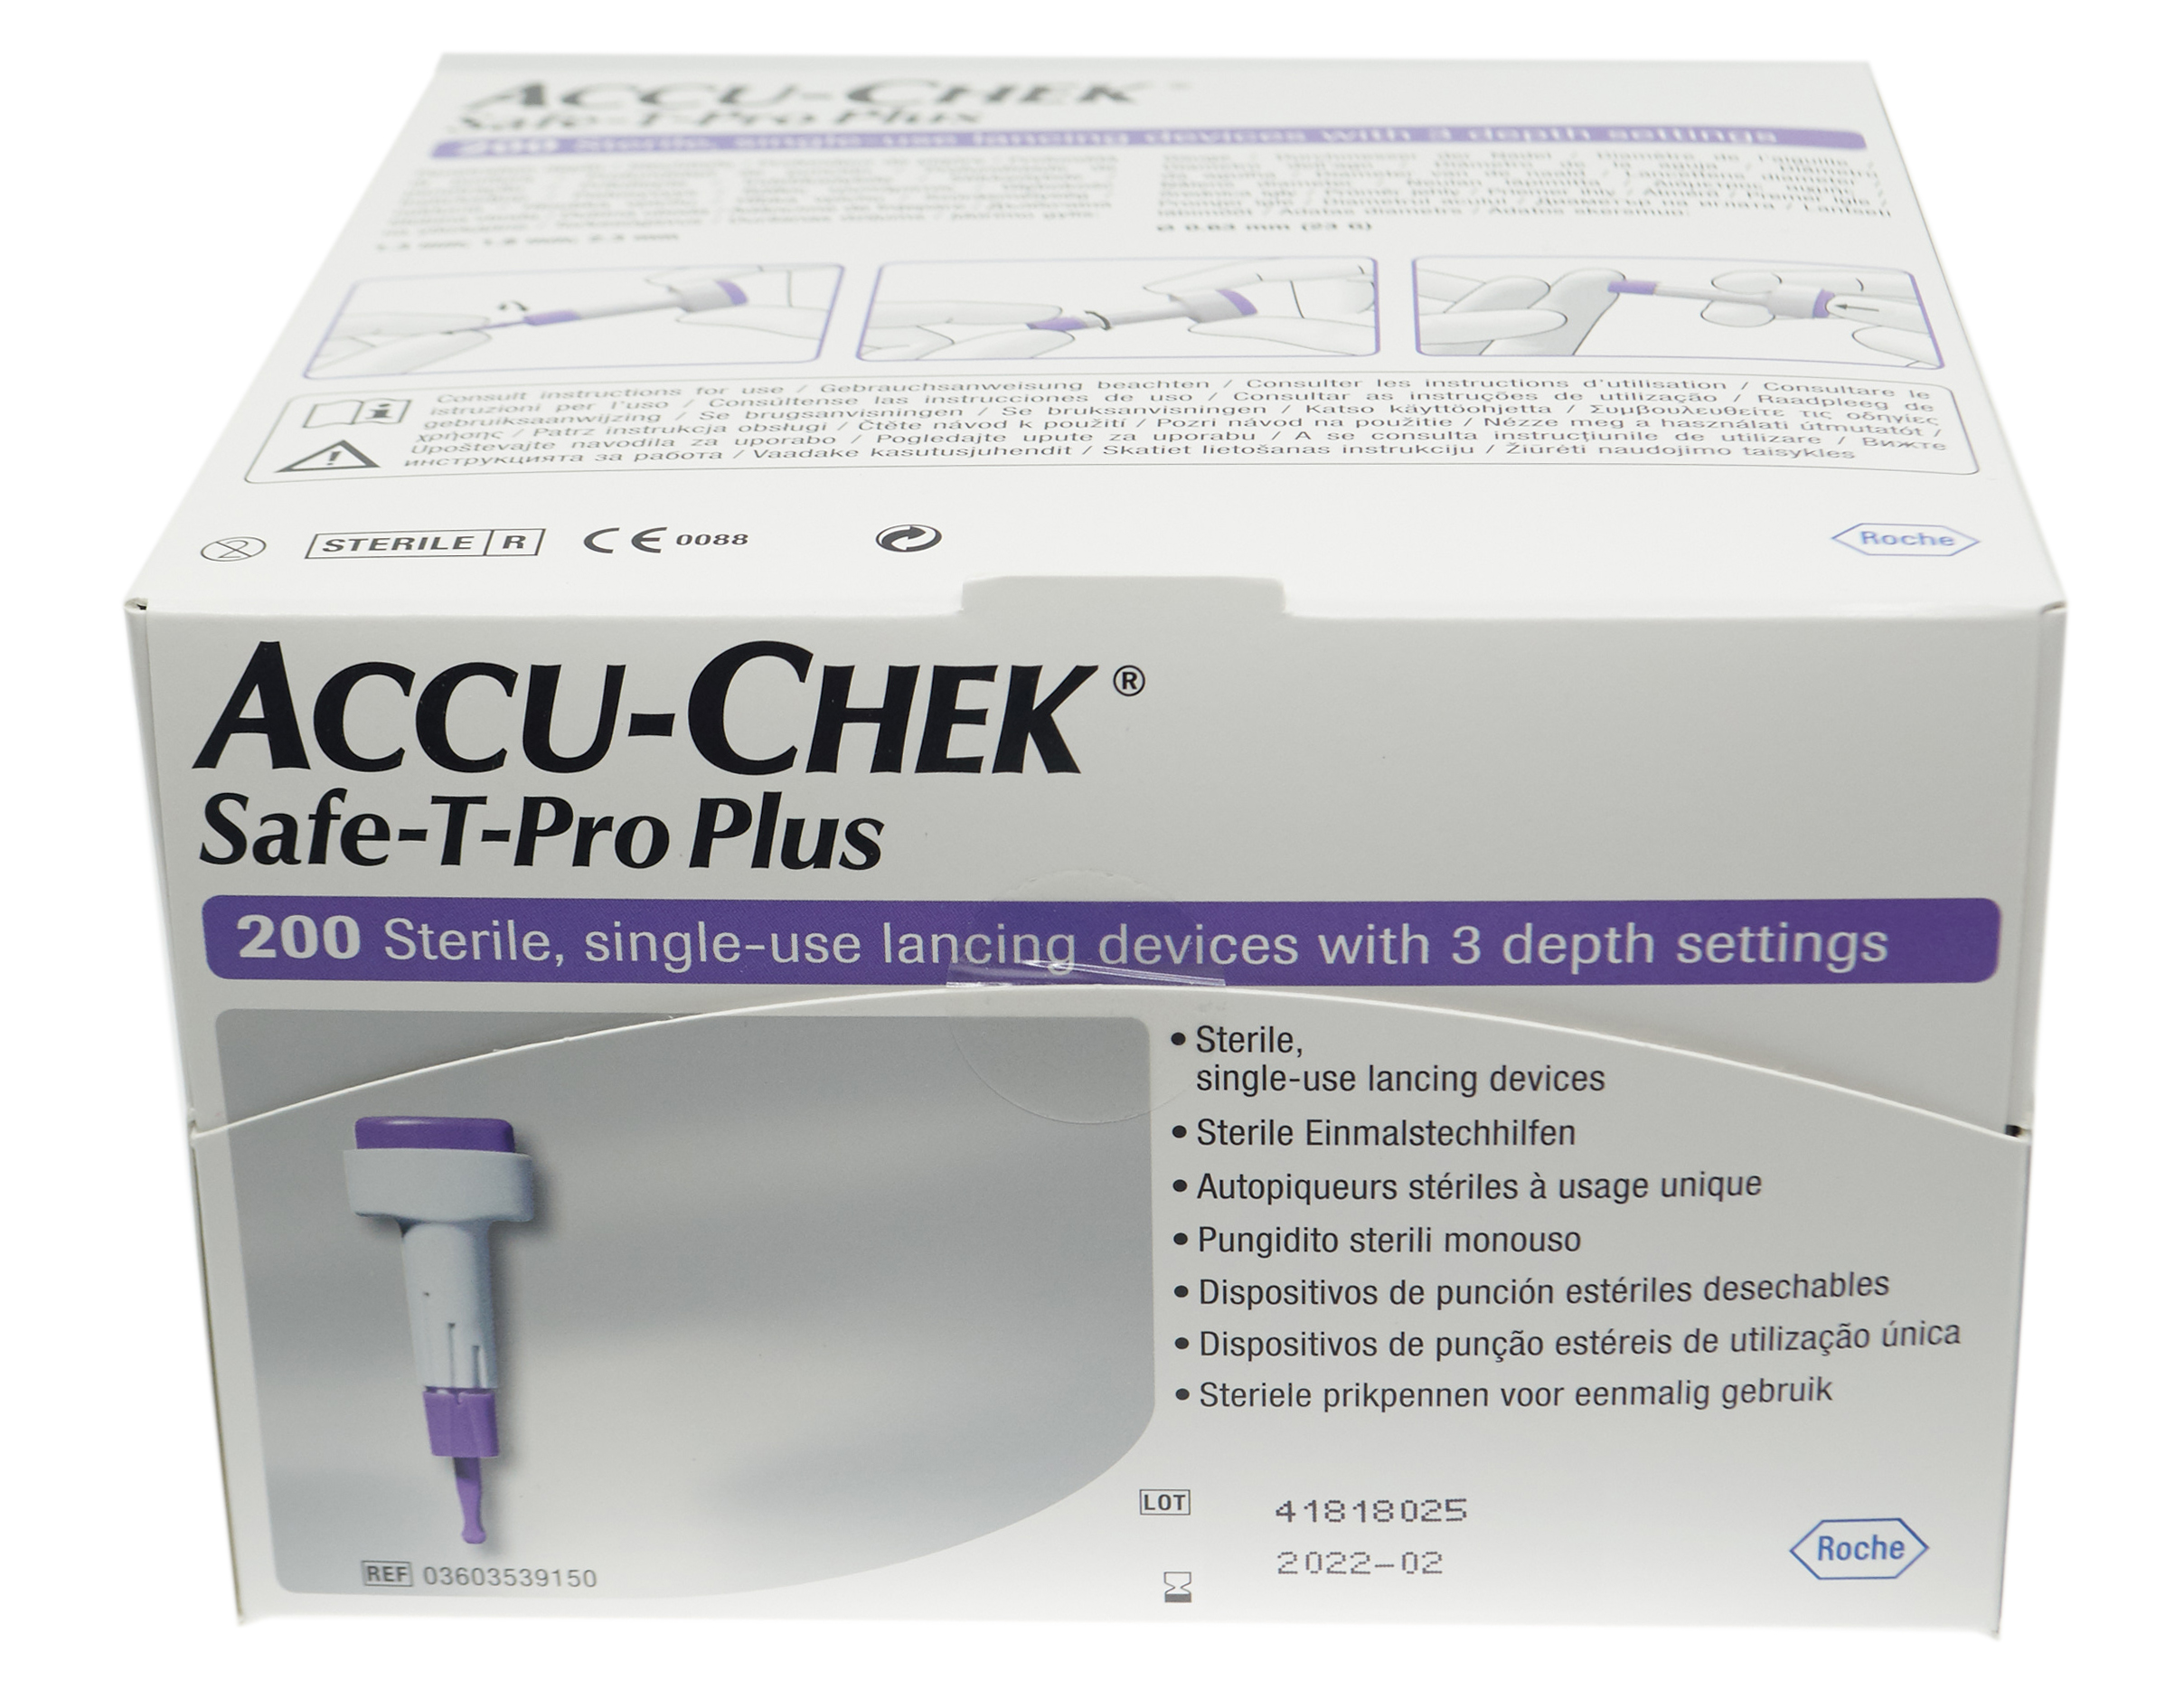 ACCU-CHEK Safe-T-Pro Plus autopiqueur 200x K2 